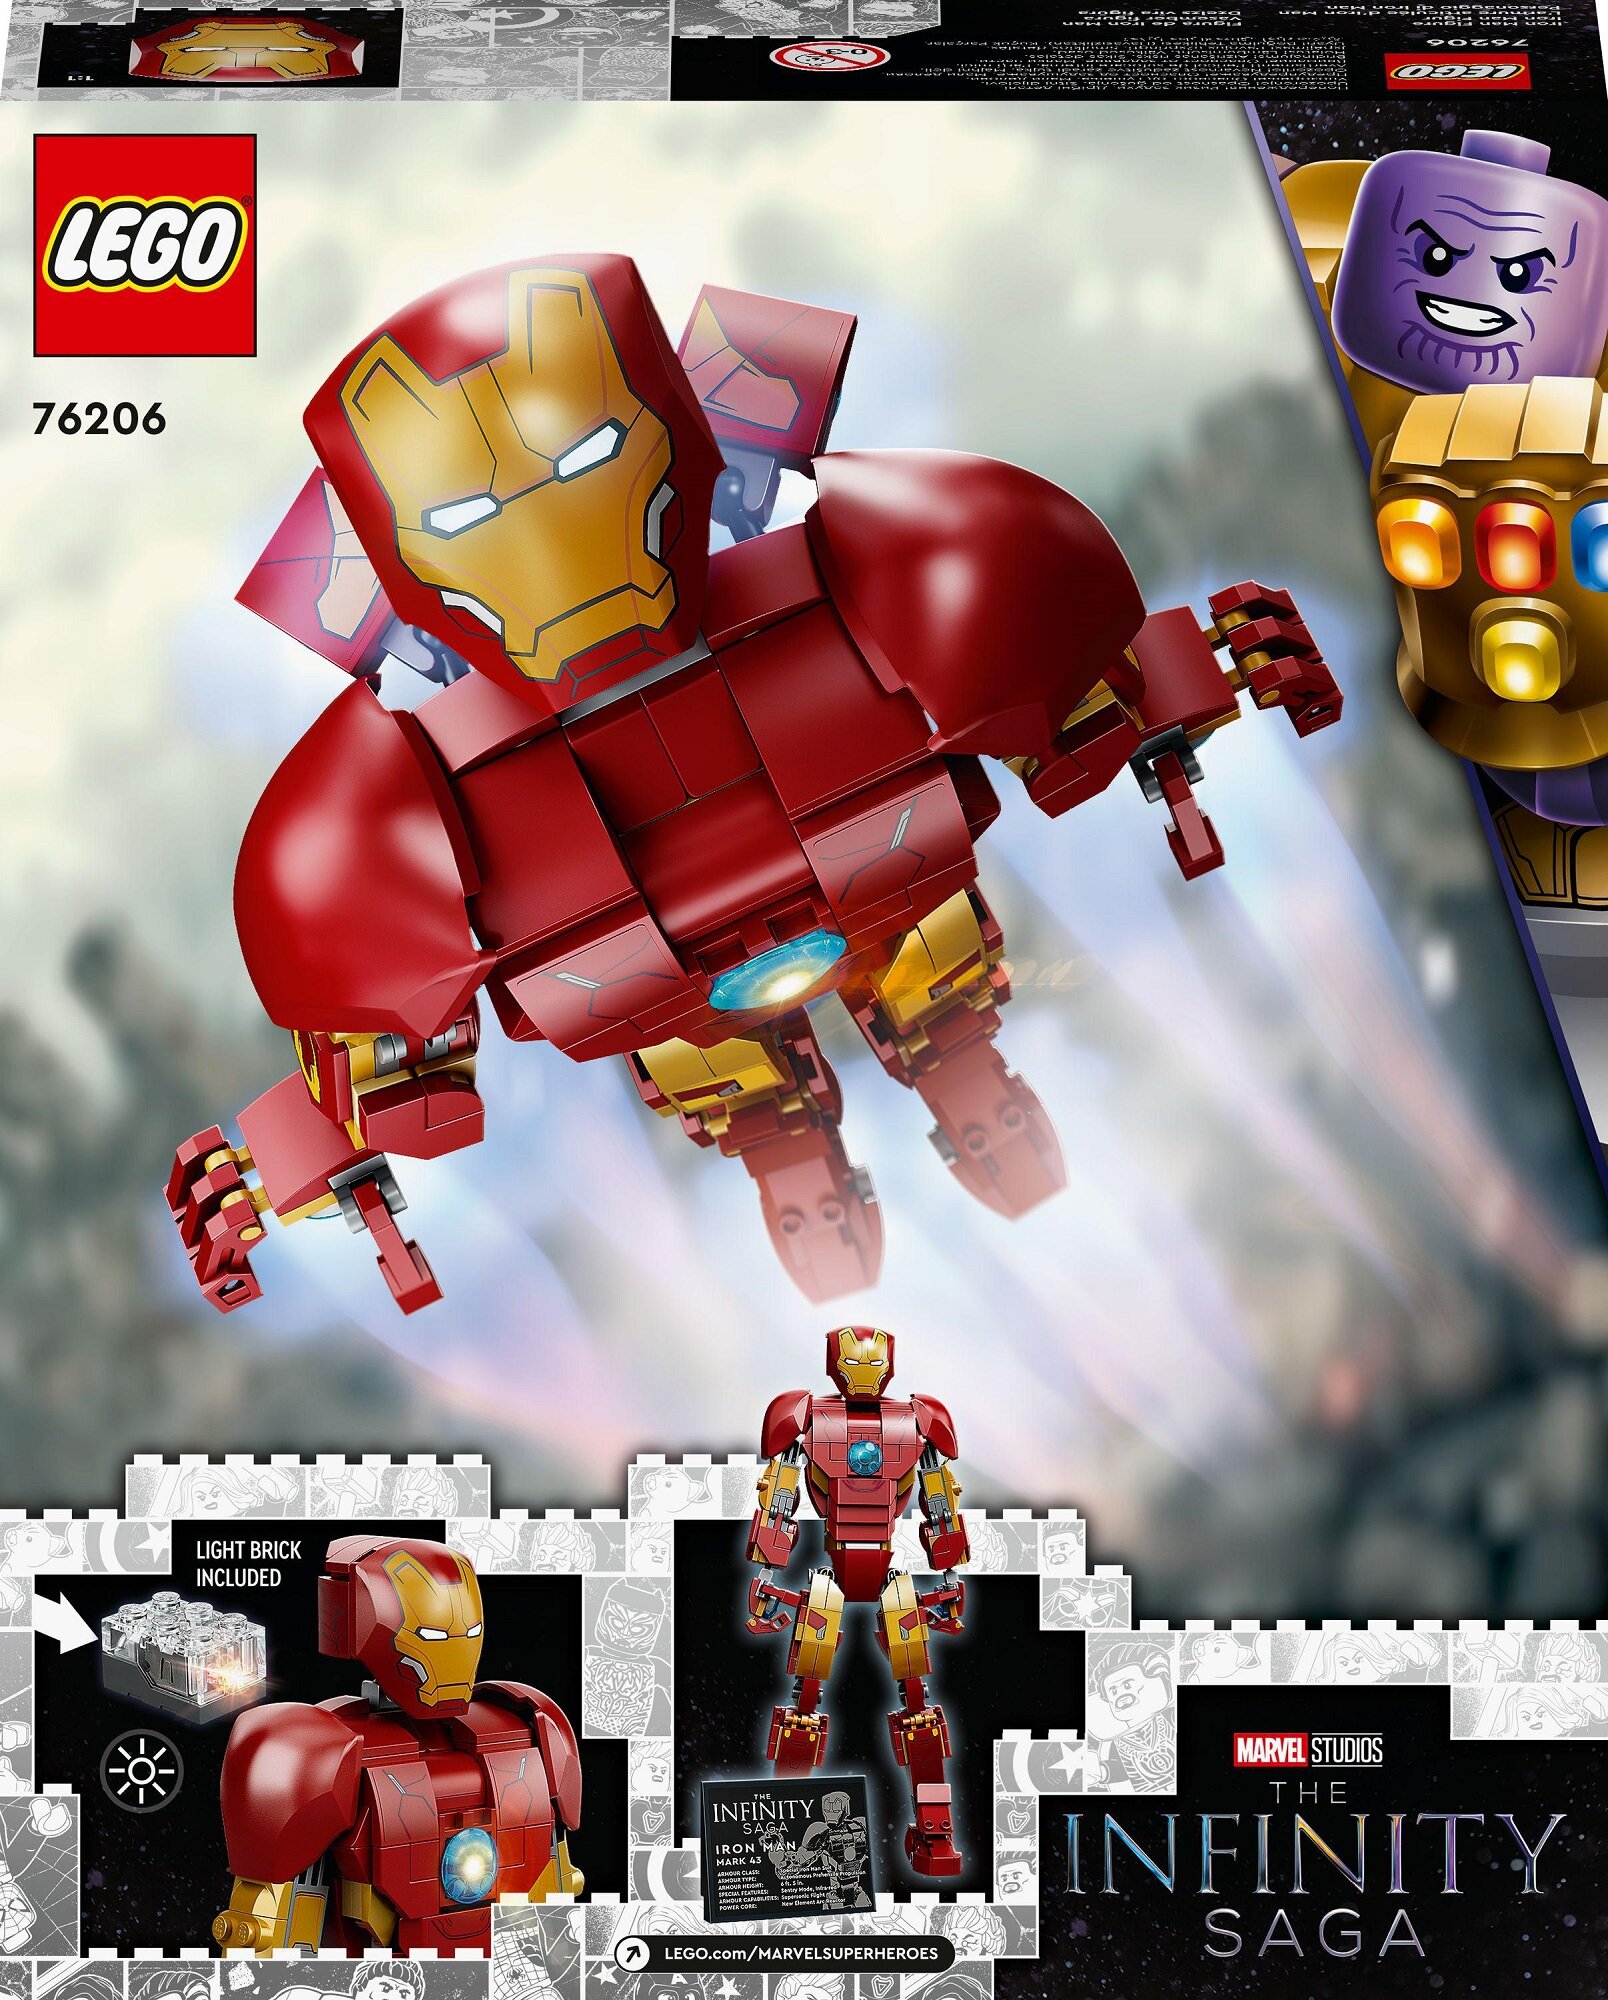 Le set LEGO ART Iron Man de Marvel Studios profite de 32% de réduction